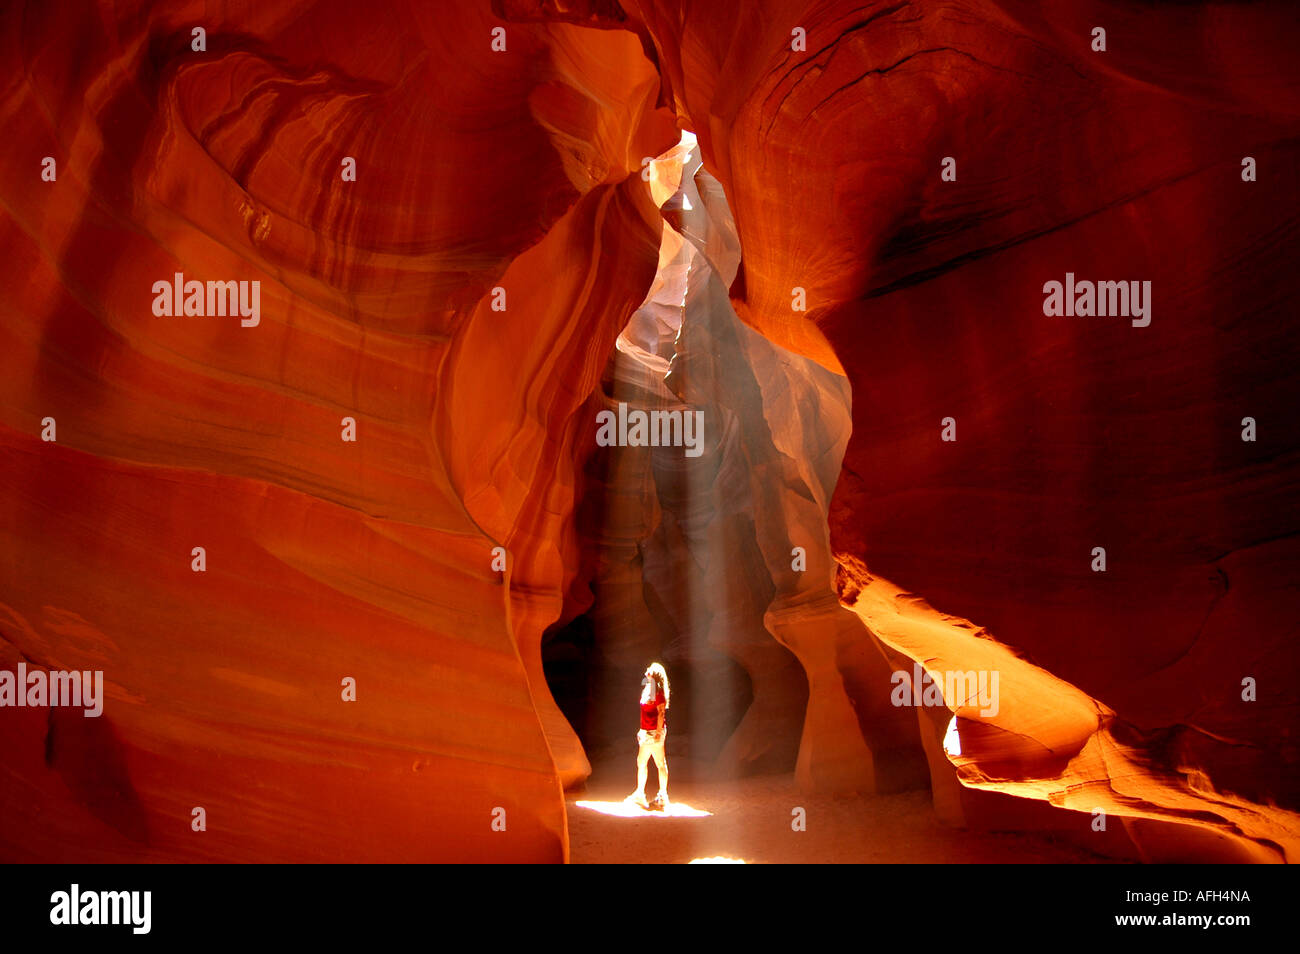 Seite der Antelope Canyon in Arizona roten Felsen Wallk Steinen Frau im Lichtschacht Stockfoto